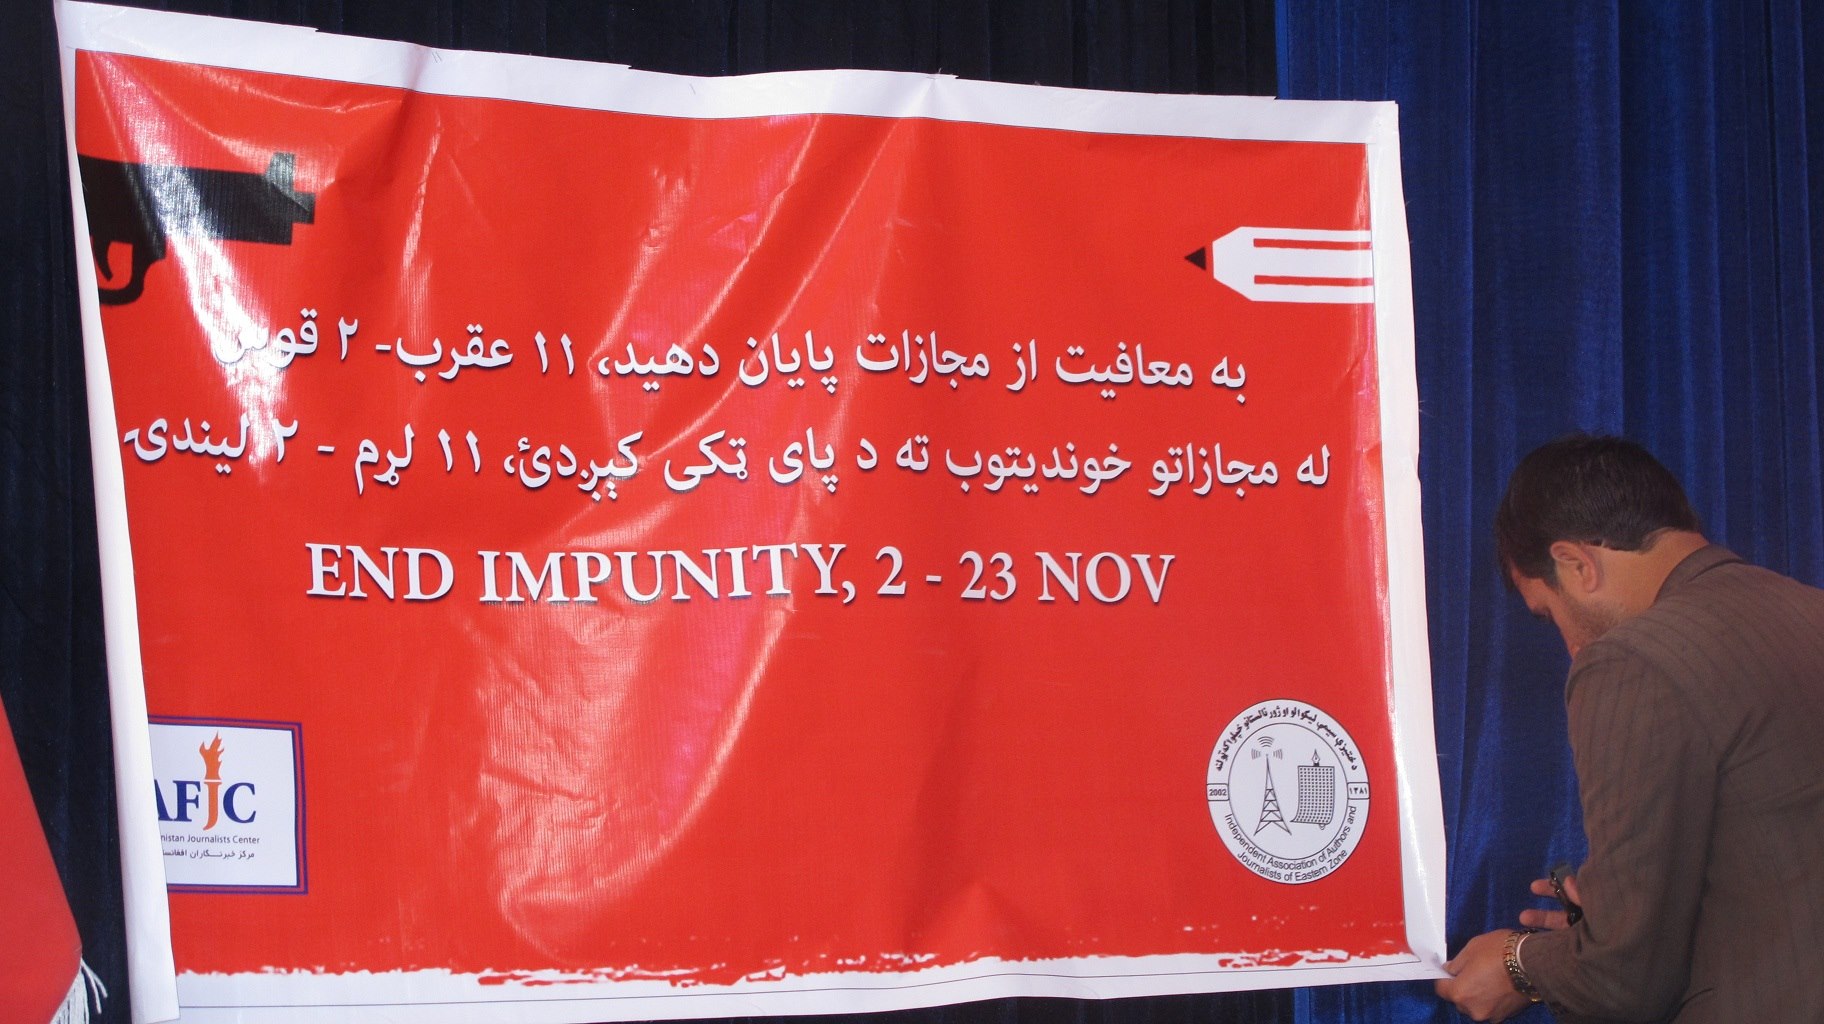 Camapaña de AFJC contra la impunidad, 2-23 de noviembre 2014